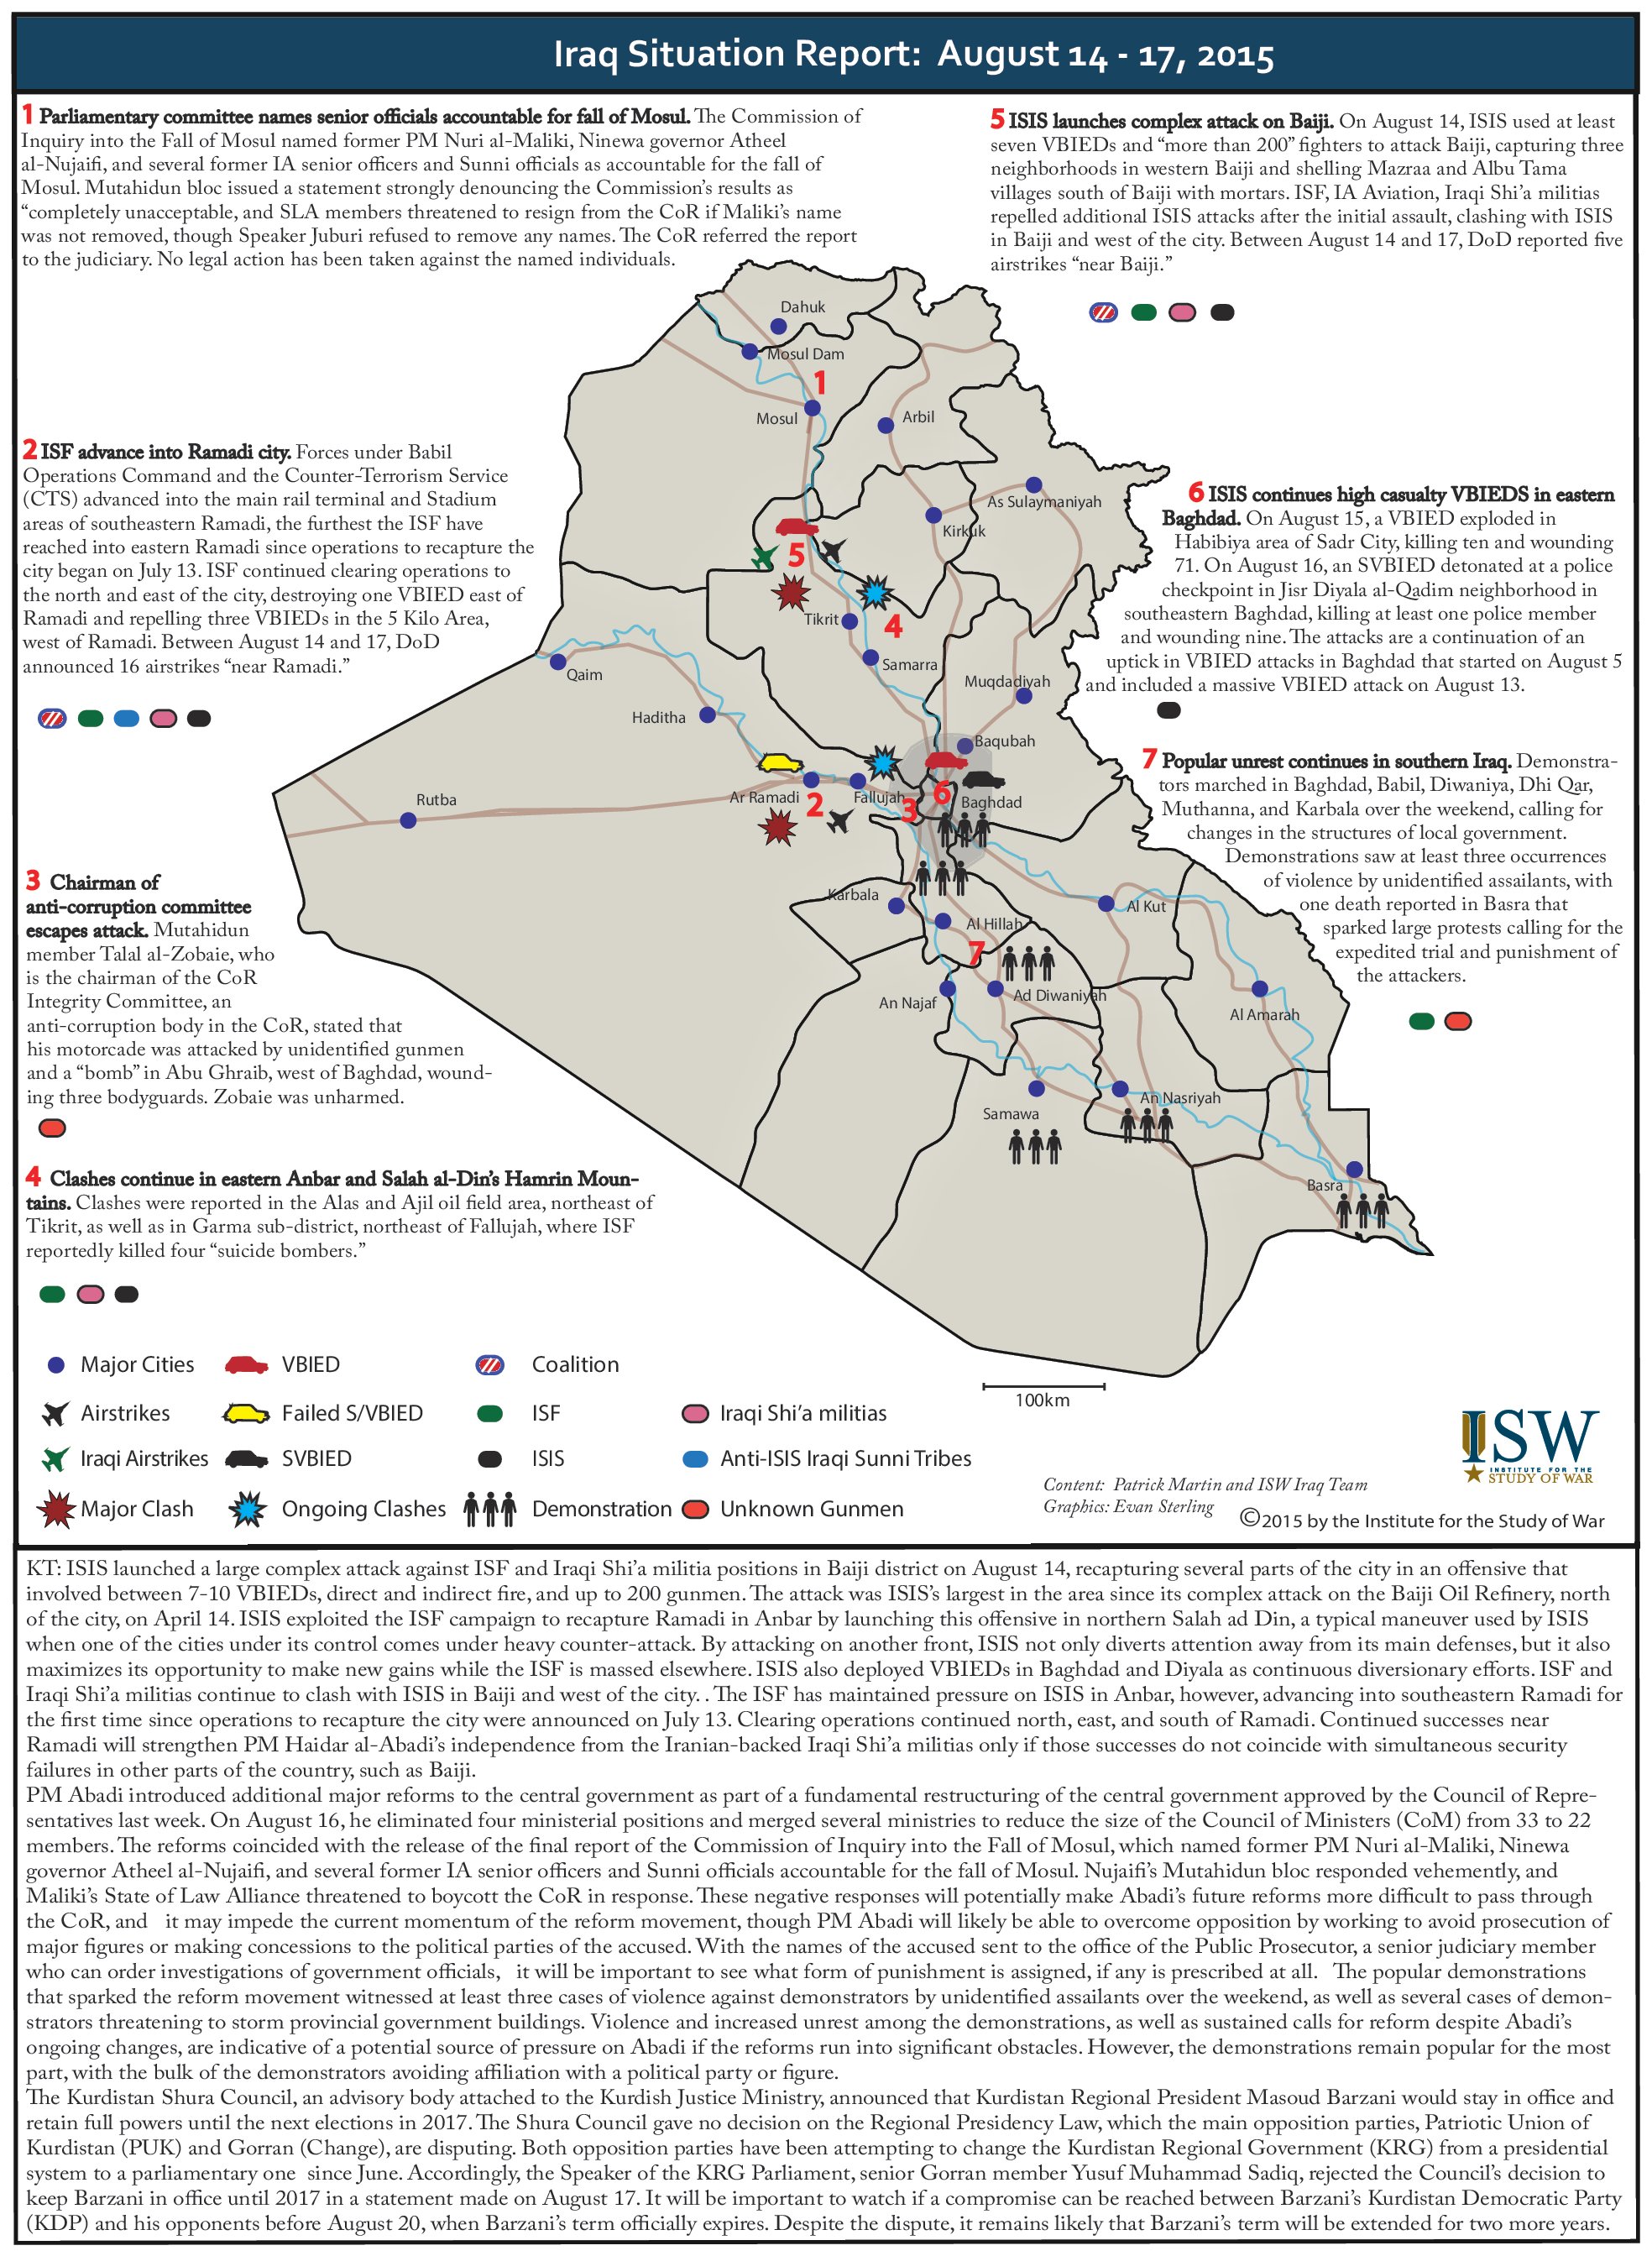 تقرير يكشف الوضع في العراق خلال الفترة 14-17/ اب 2015